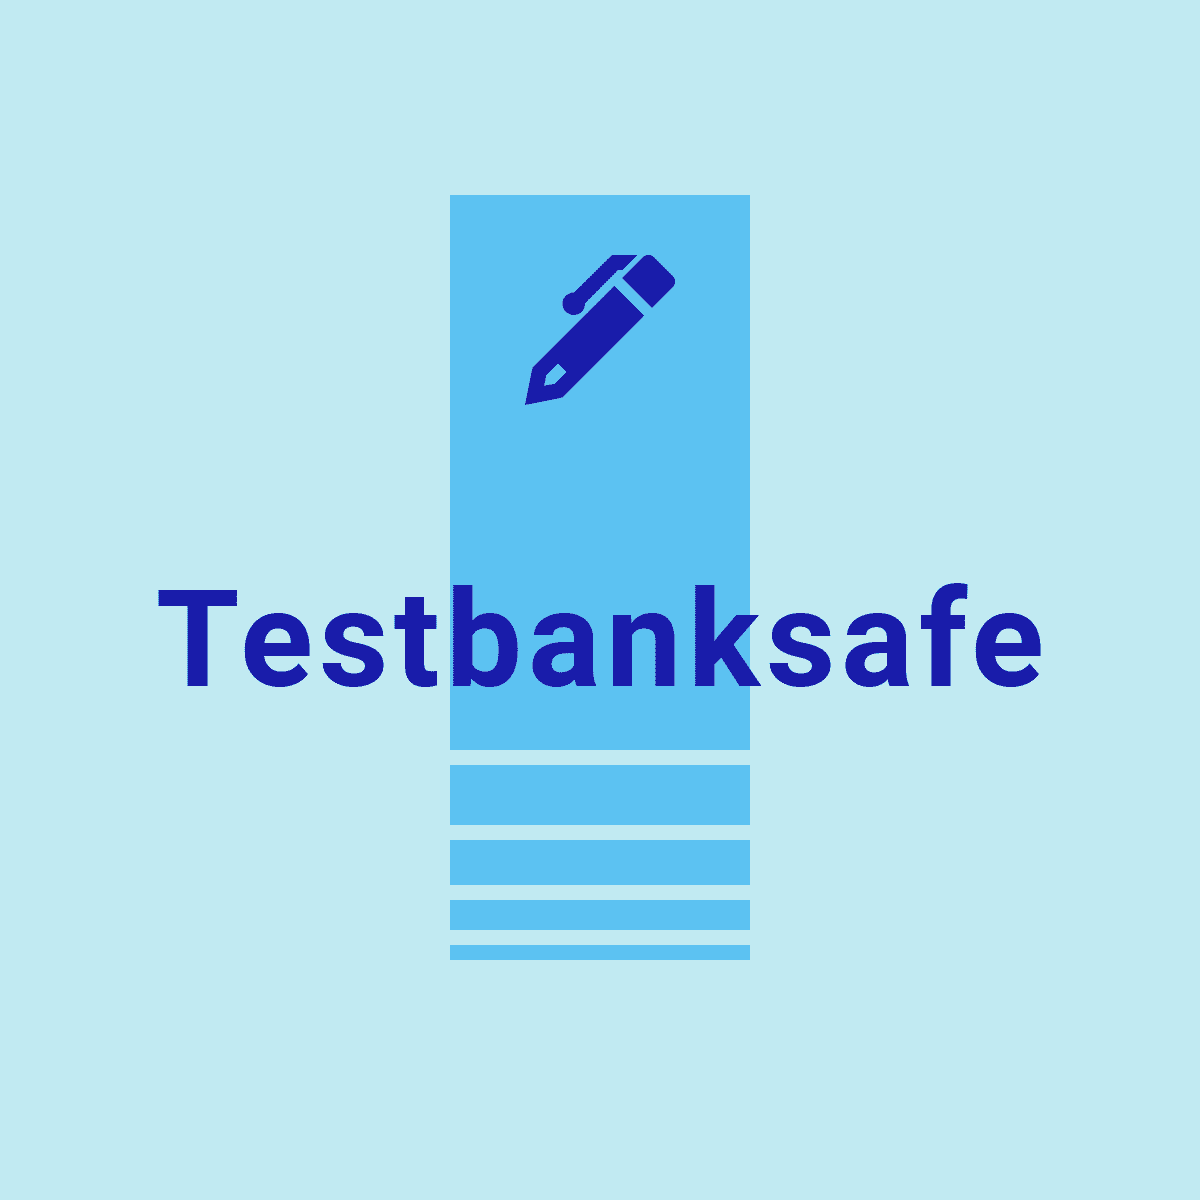 Test Bank Safe